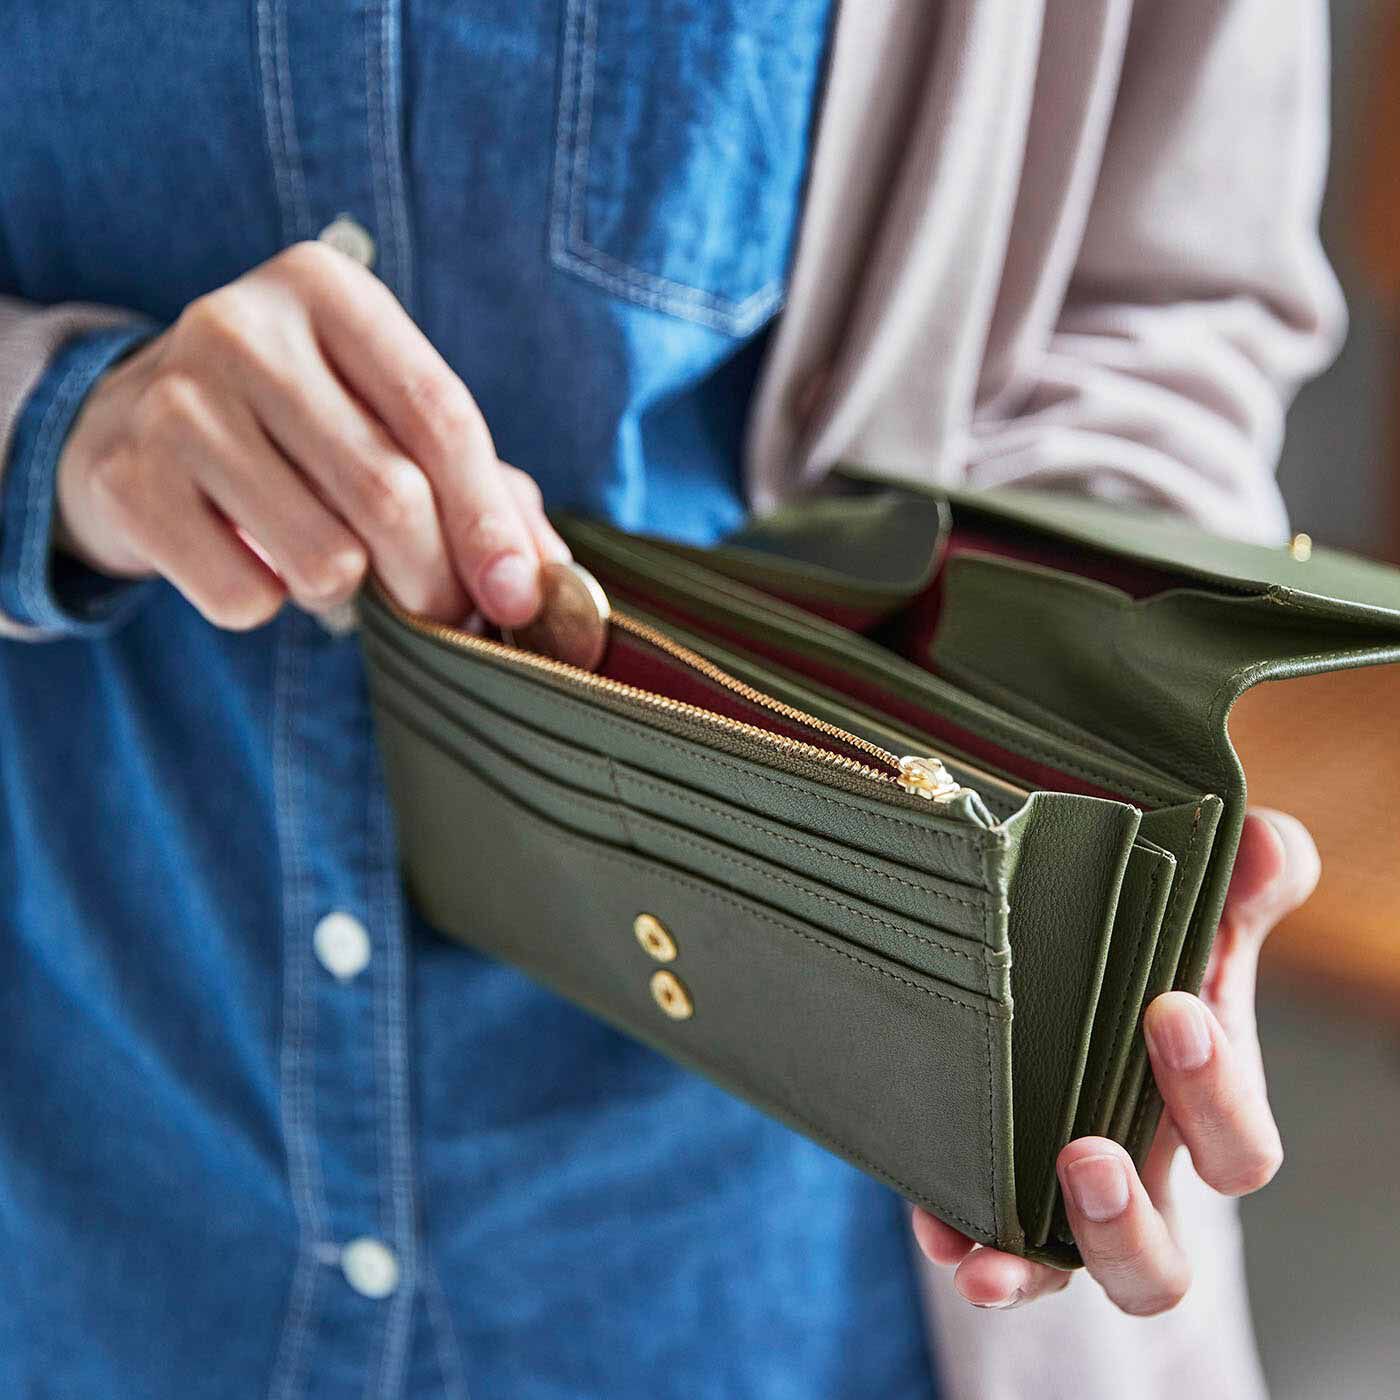 ＆Stories|財布職人と作った 職人本革のギャルソンウォレット〈オリーブ色〉|便利で安心なファスナーポケットも付いています。